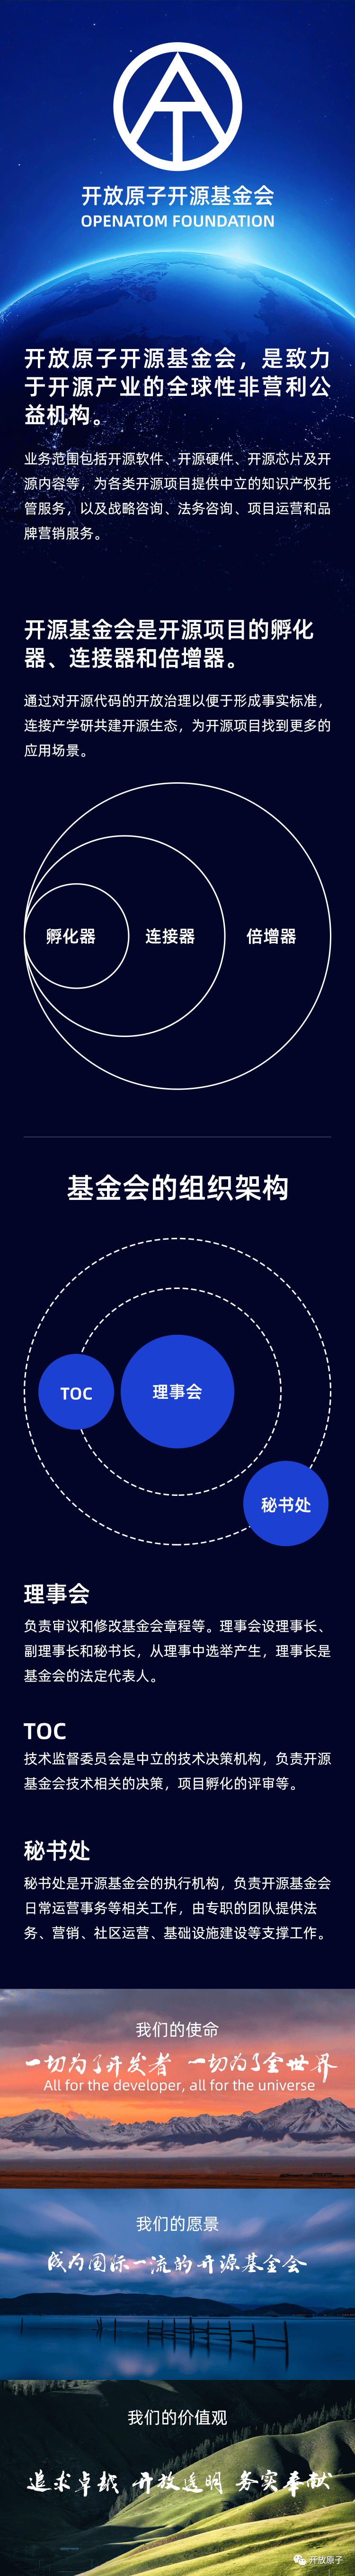 中国首个开源基金会“开放原子开源基金会”亮相